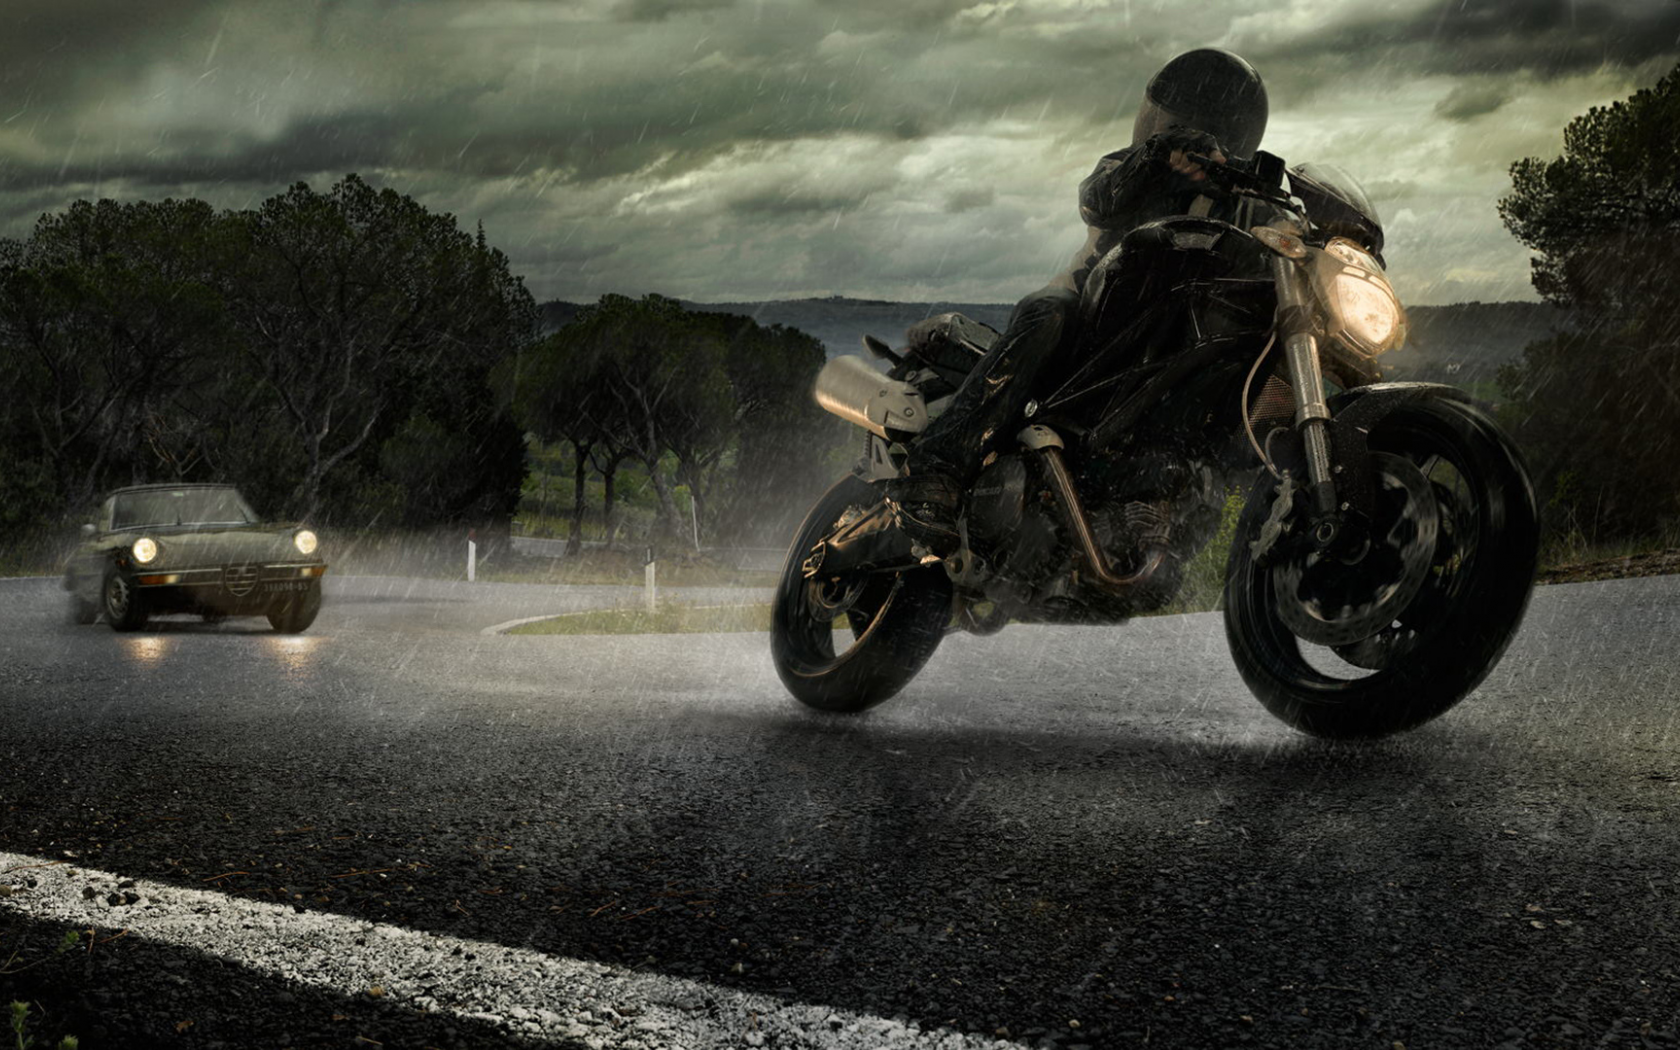 мотоцикл, alfa romeo, дорога, ducati, автомобиль, дождь